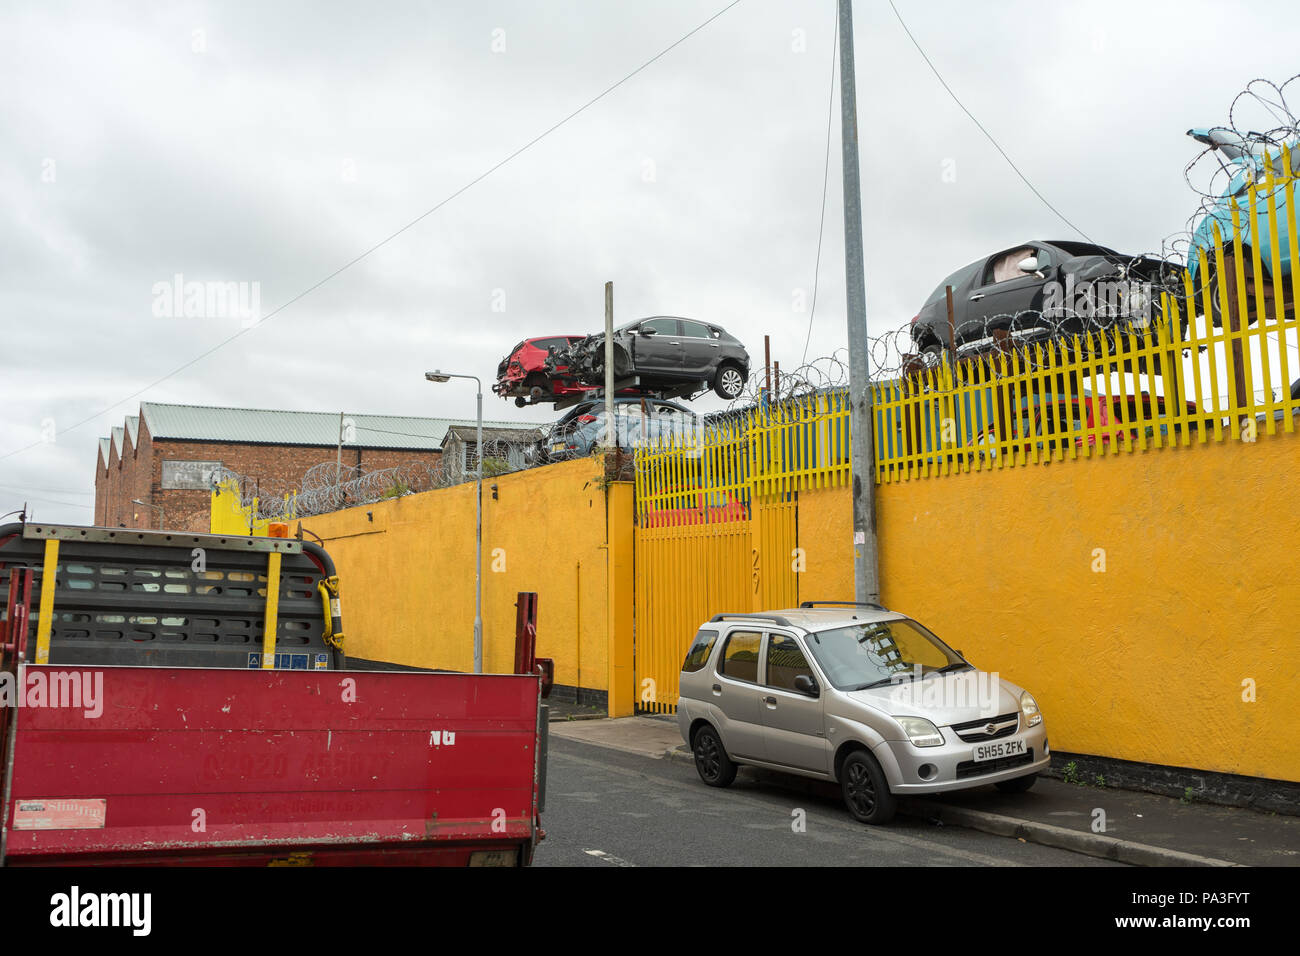 Industriegebiet in Birkenhead, Wirral, zeigt eine gelbe Wand und ein Auto Schrottplatz Stockfoto